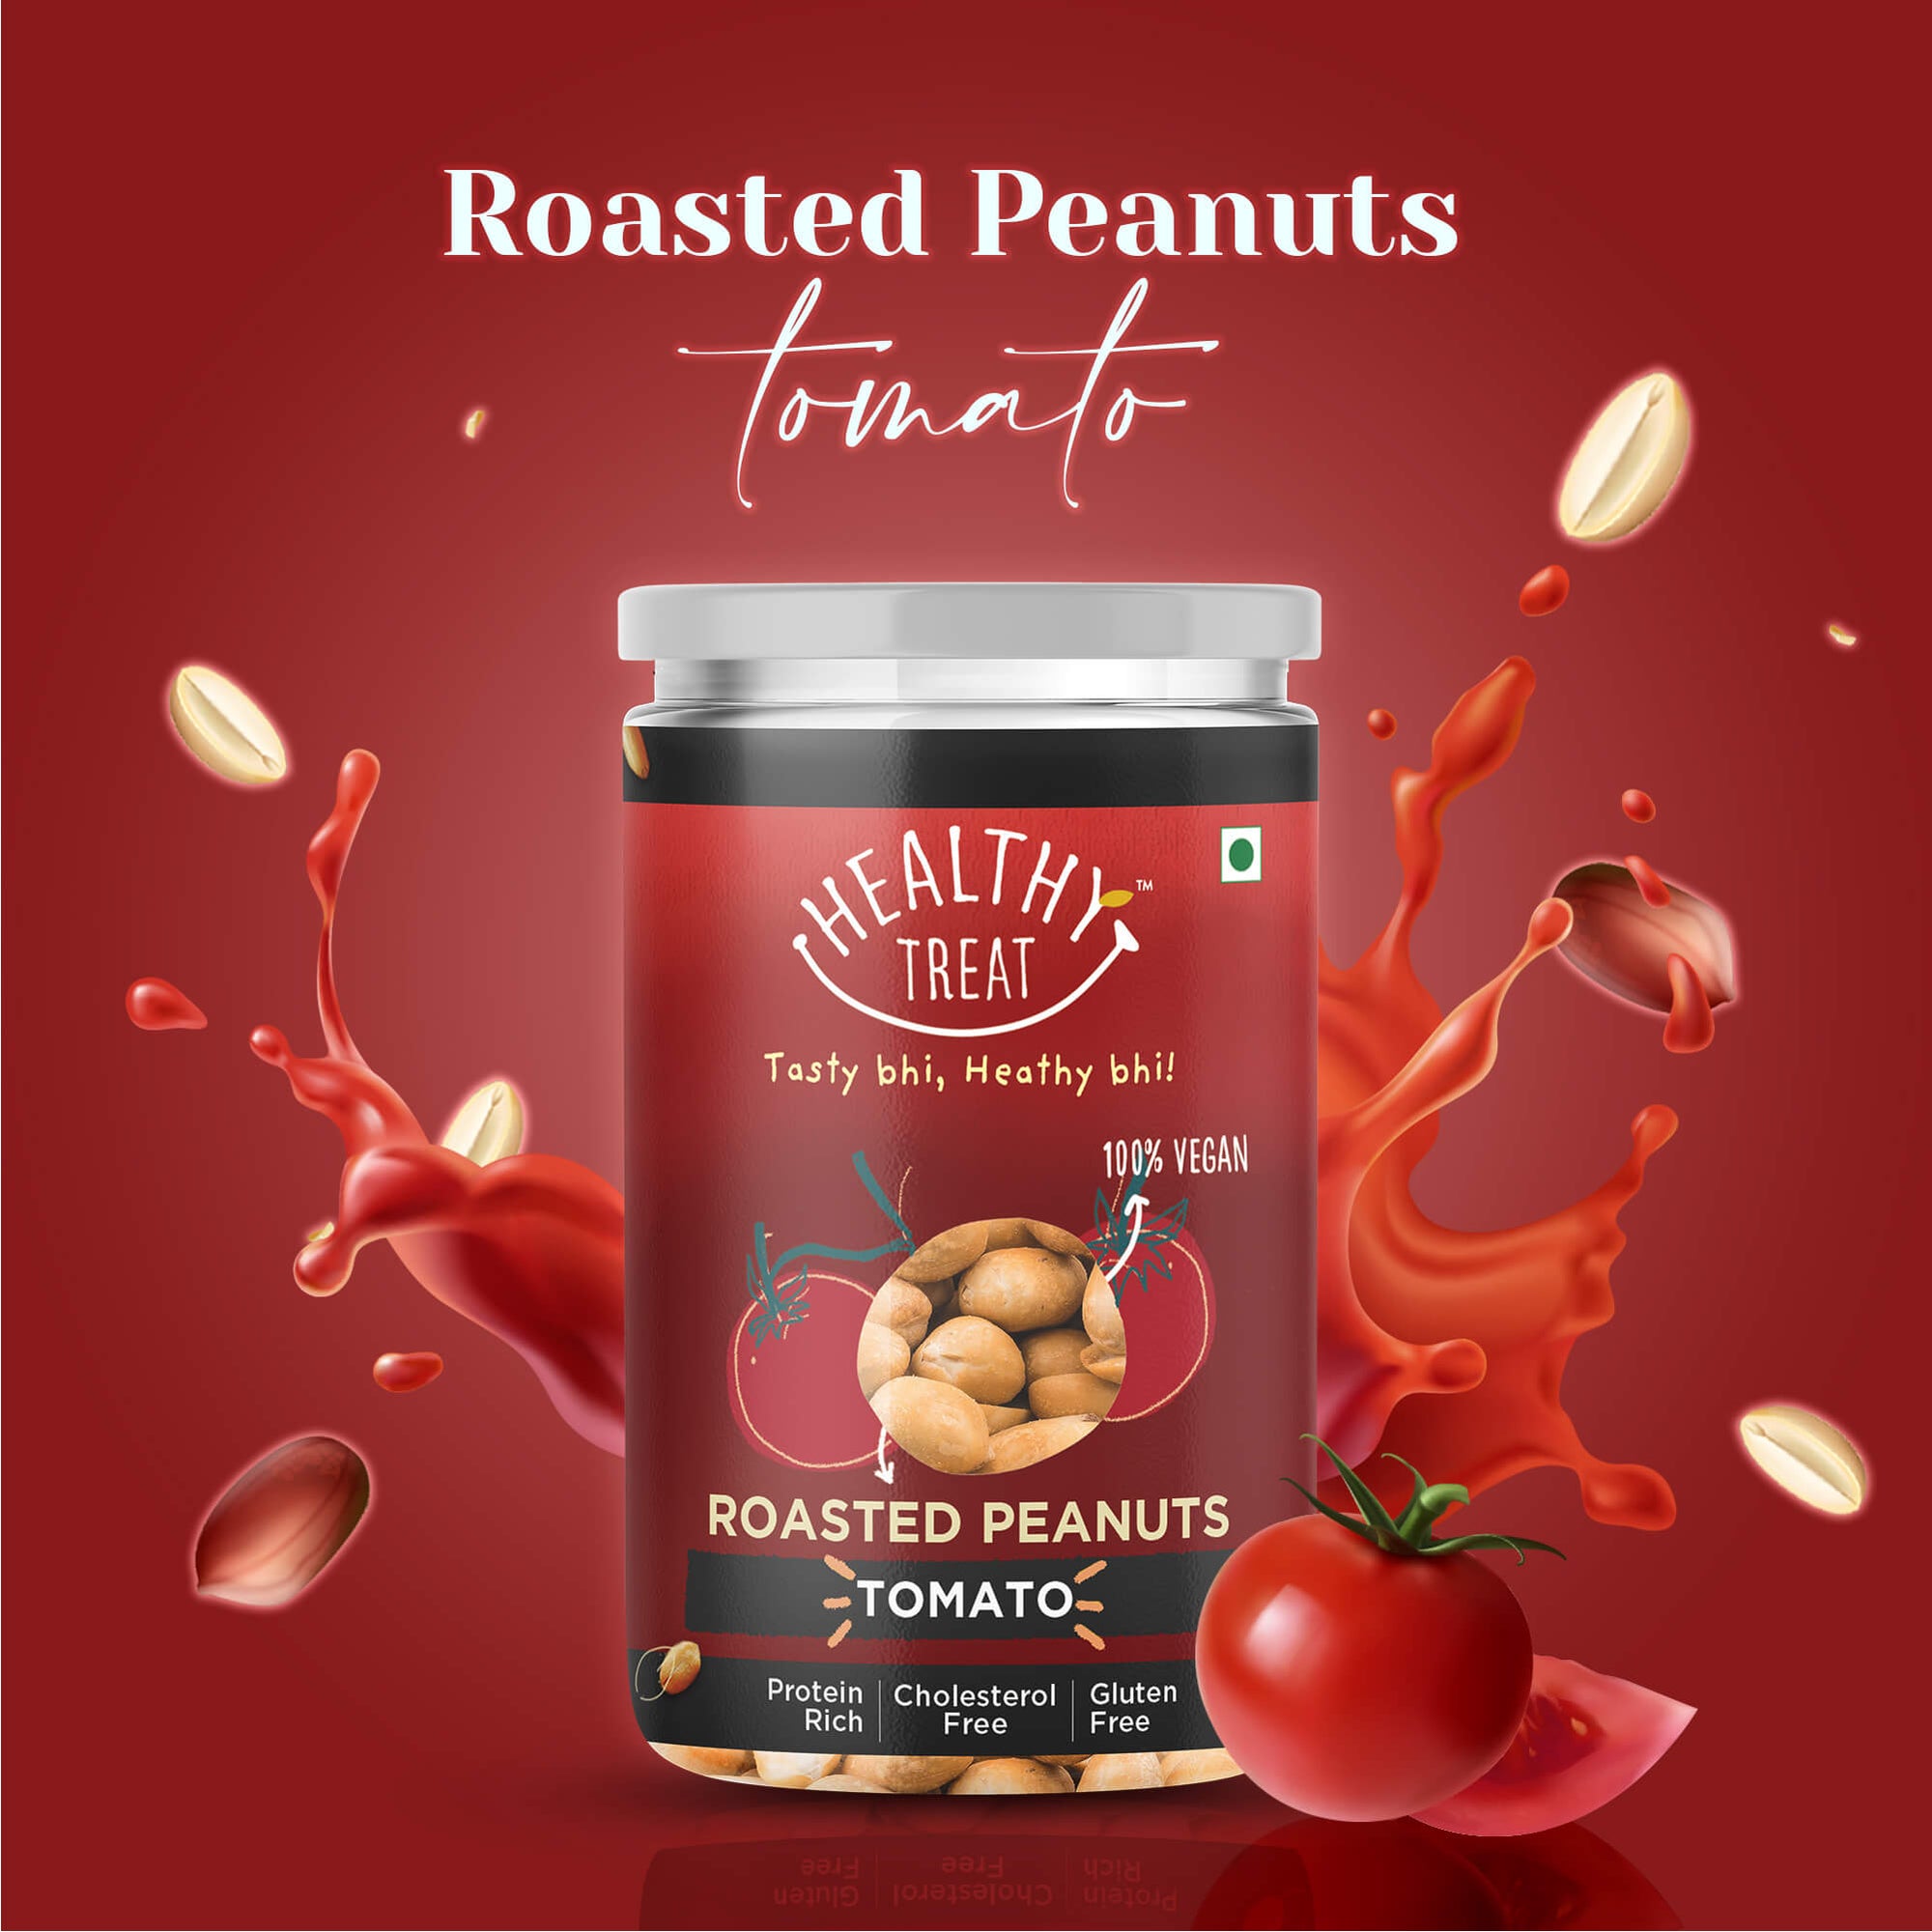 roasted tomato peanuts